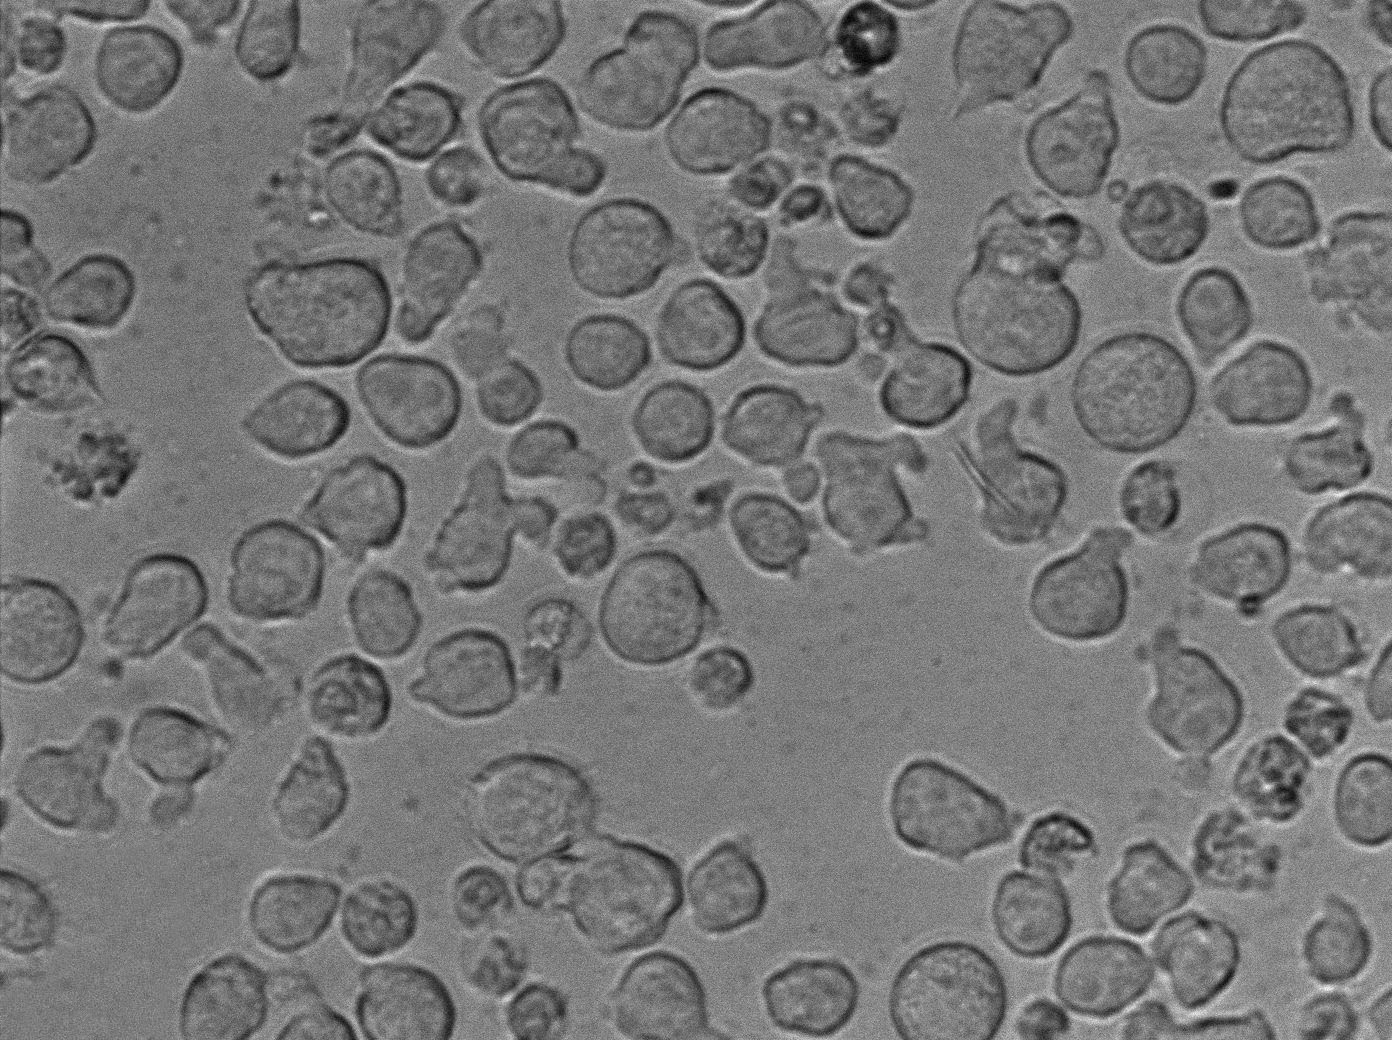 Karpas-299:人间变性大细胞淋巴瘤复苏细胞(提供STR鉴定图谱)